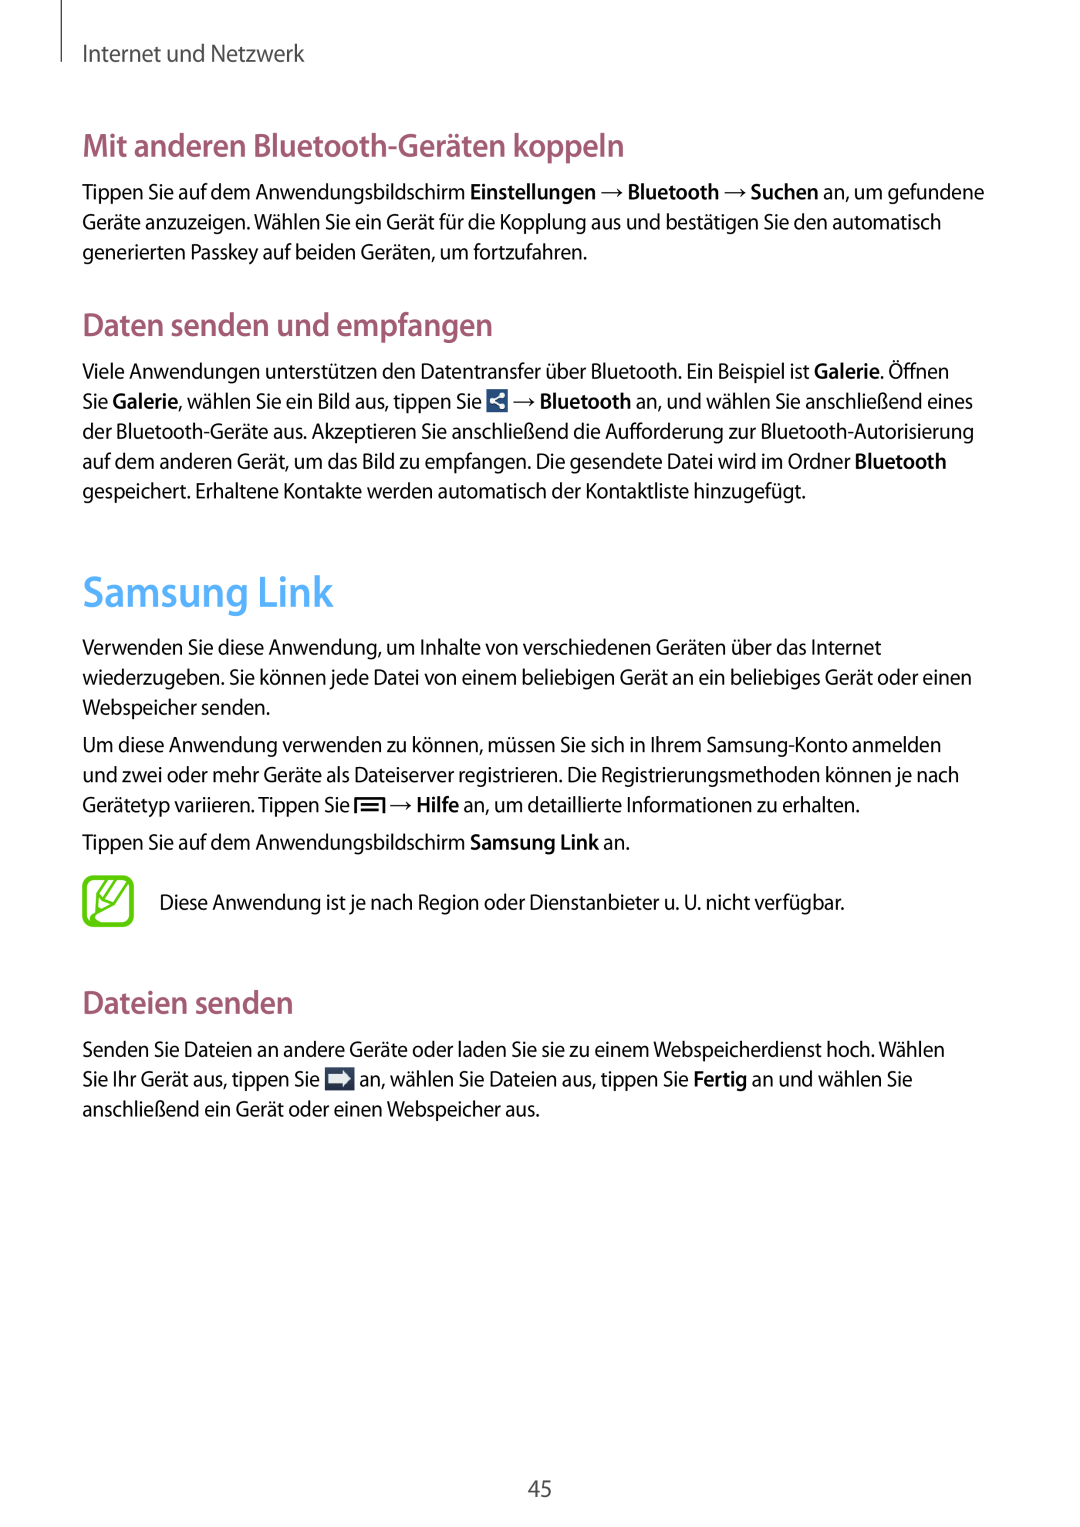 Samsung SM-T110XYKADBT Samsung Link, Mit anderen Bluetooth-Geräten koppeln, Daten senden und empfangen, Dateien senden 